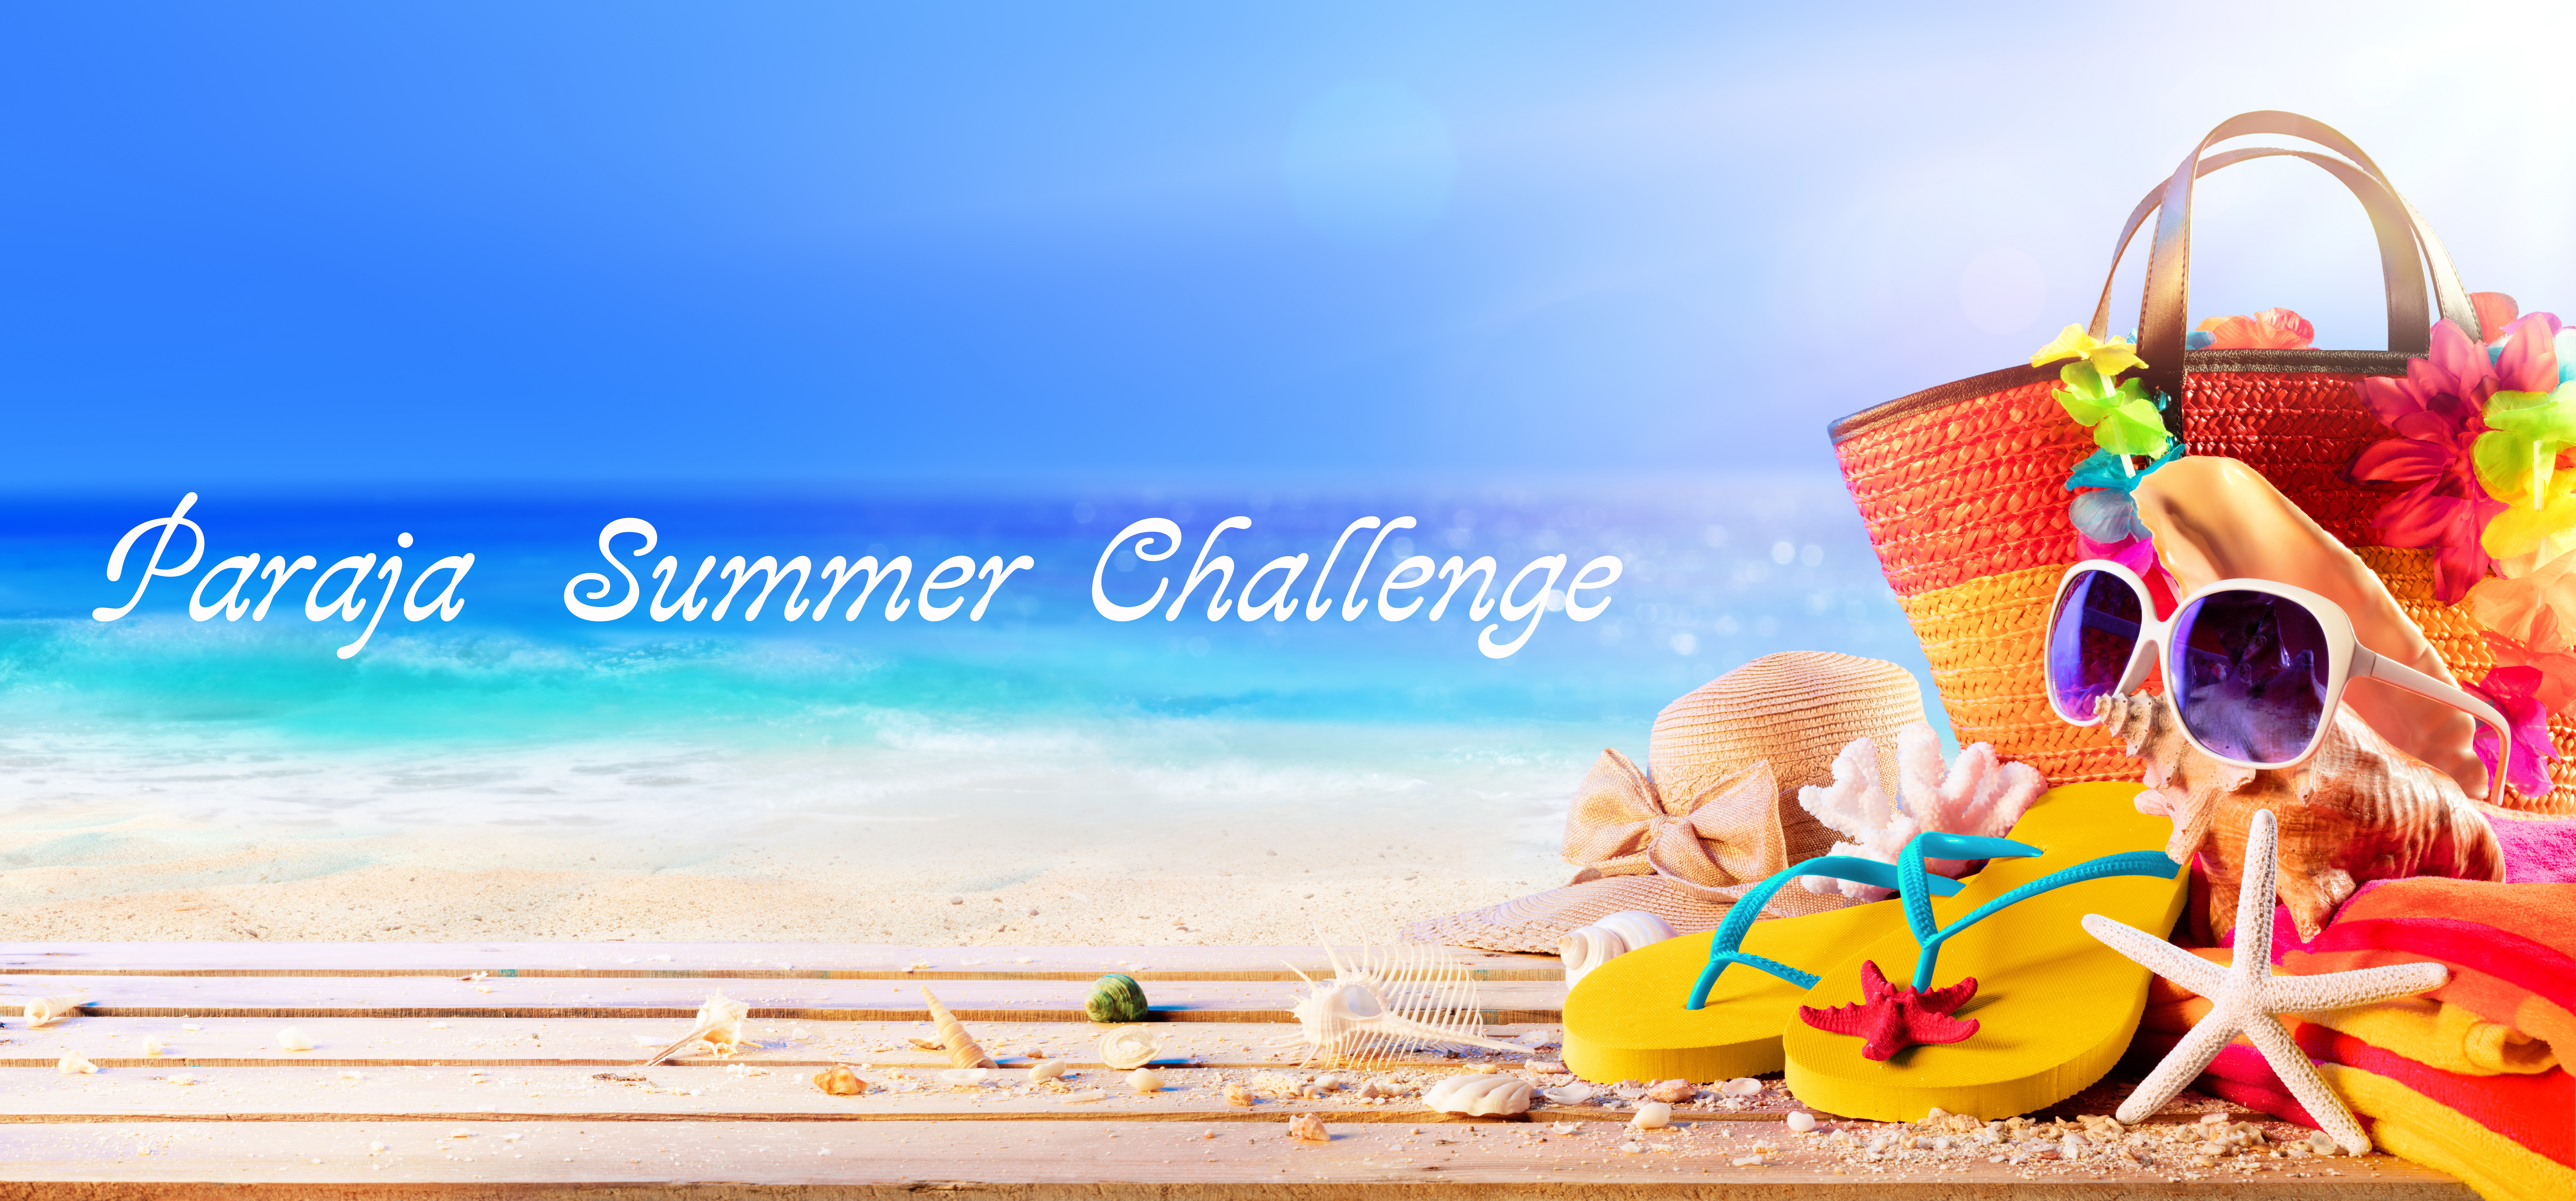 6月30日(日)【Paraja Summer Challenge】開催♪